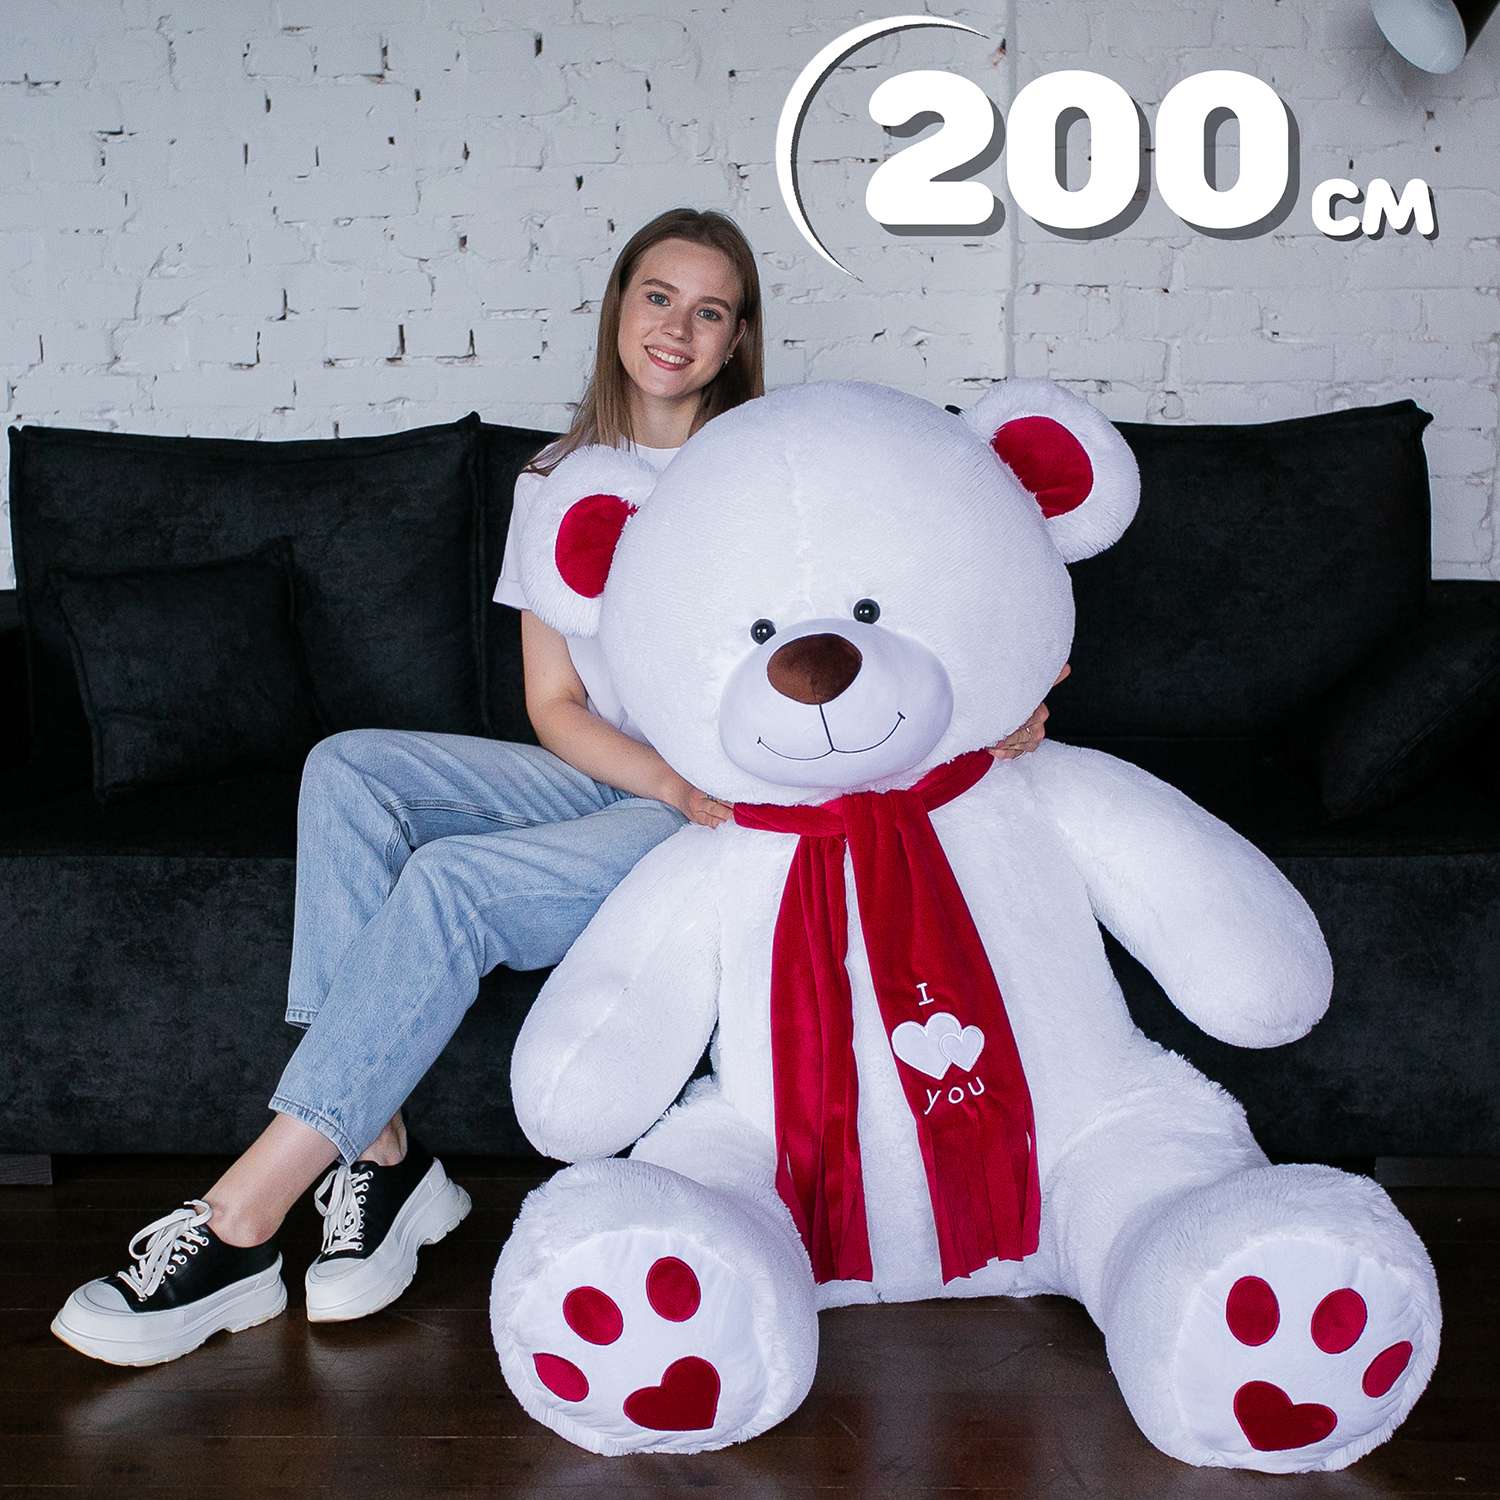 Мягкая игрушка Мягкие игрушки БелайТойс Плюшевый медведь Кельвин 200 см цвет белый - фото 1